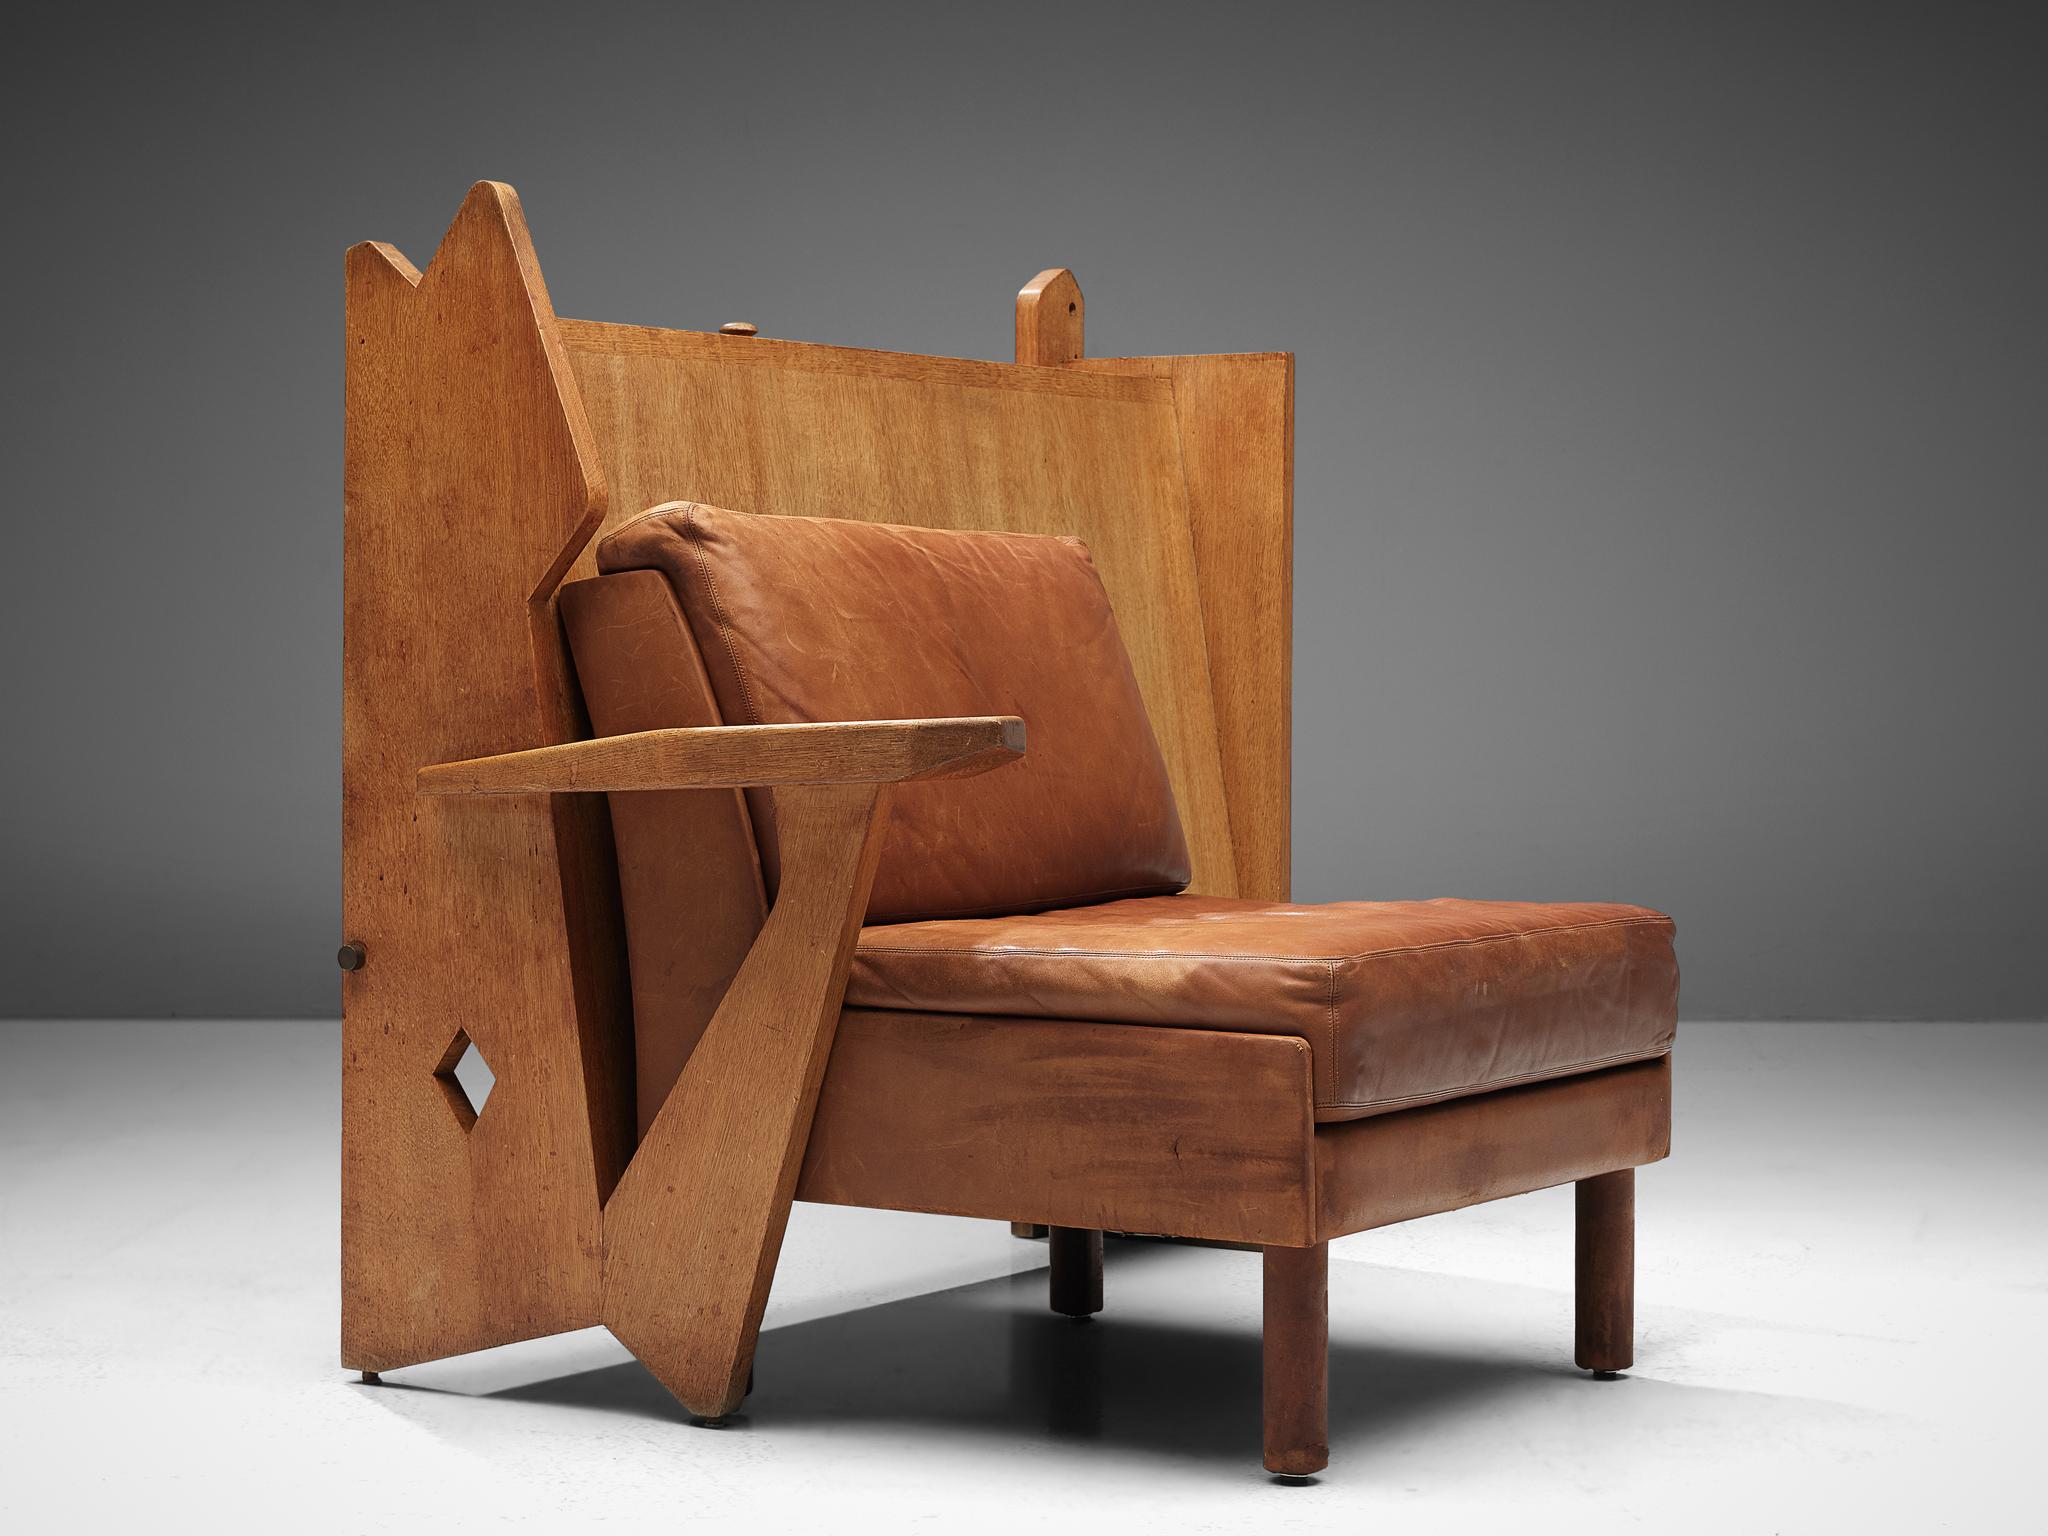 Guillerme et Chambron für Votre Maison, Sessel und Schrank, Eiche, Leder, Frankreich, 1960er Jahre

Dies ist ein bemerkenswertes Möbelstück von Guillerme et Chambron. Die gesamte Konstruktion basiert auf einem Sitzbereich und einem einzigartigen,